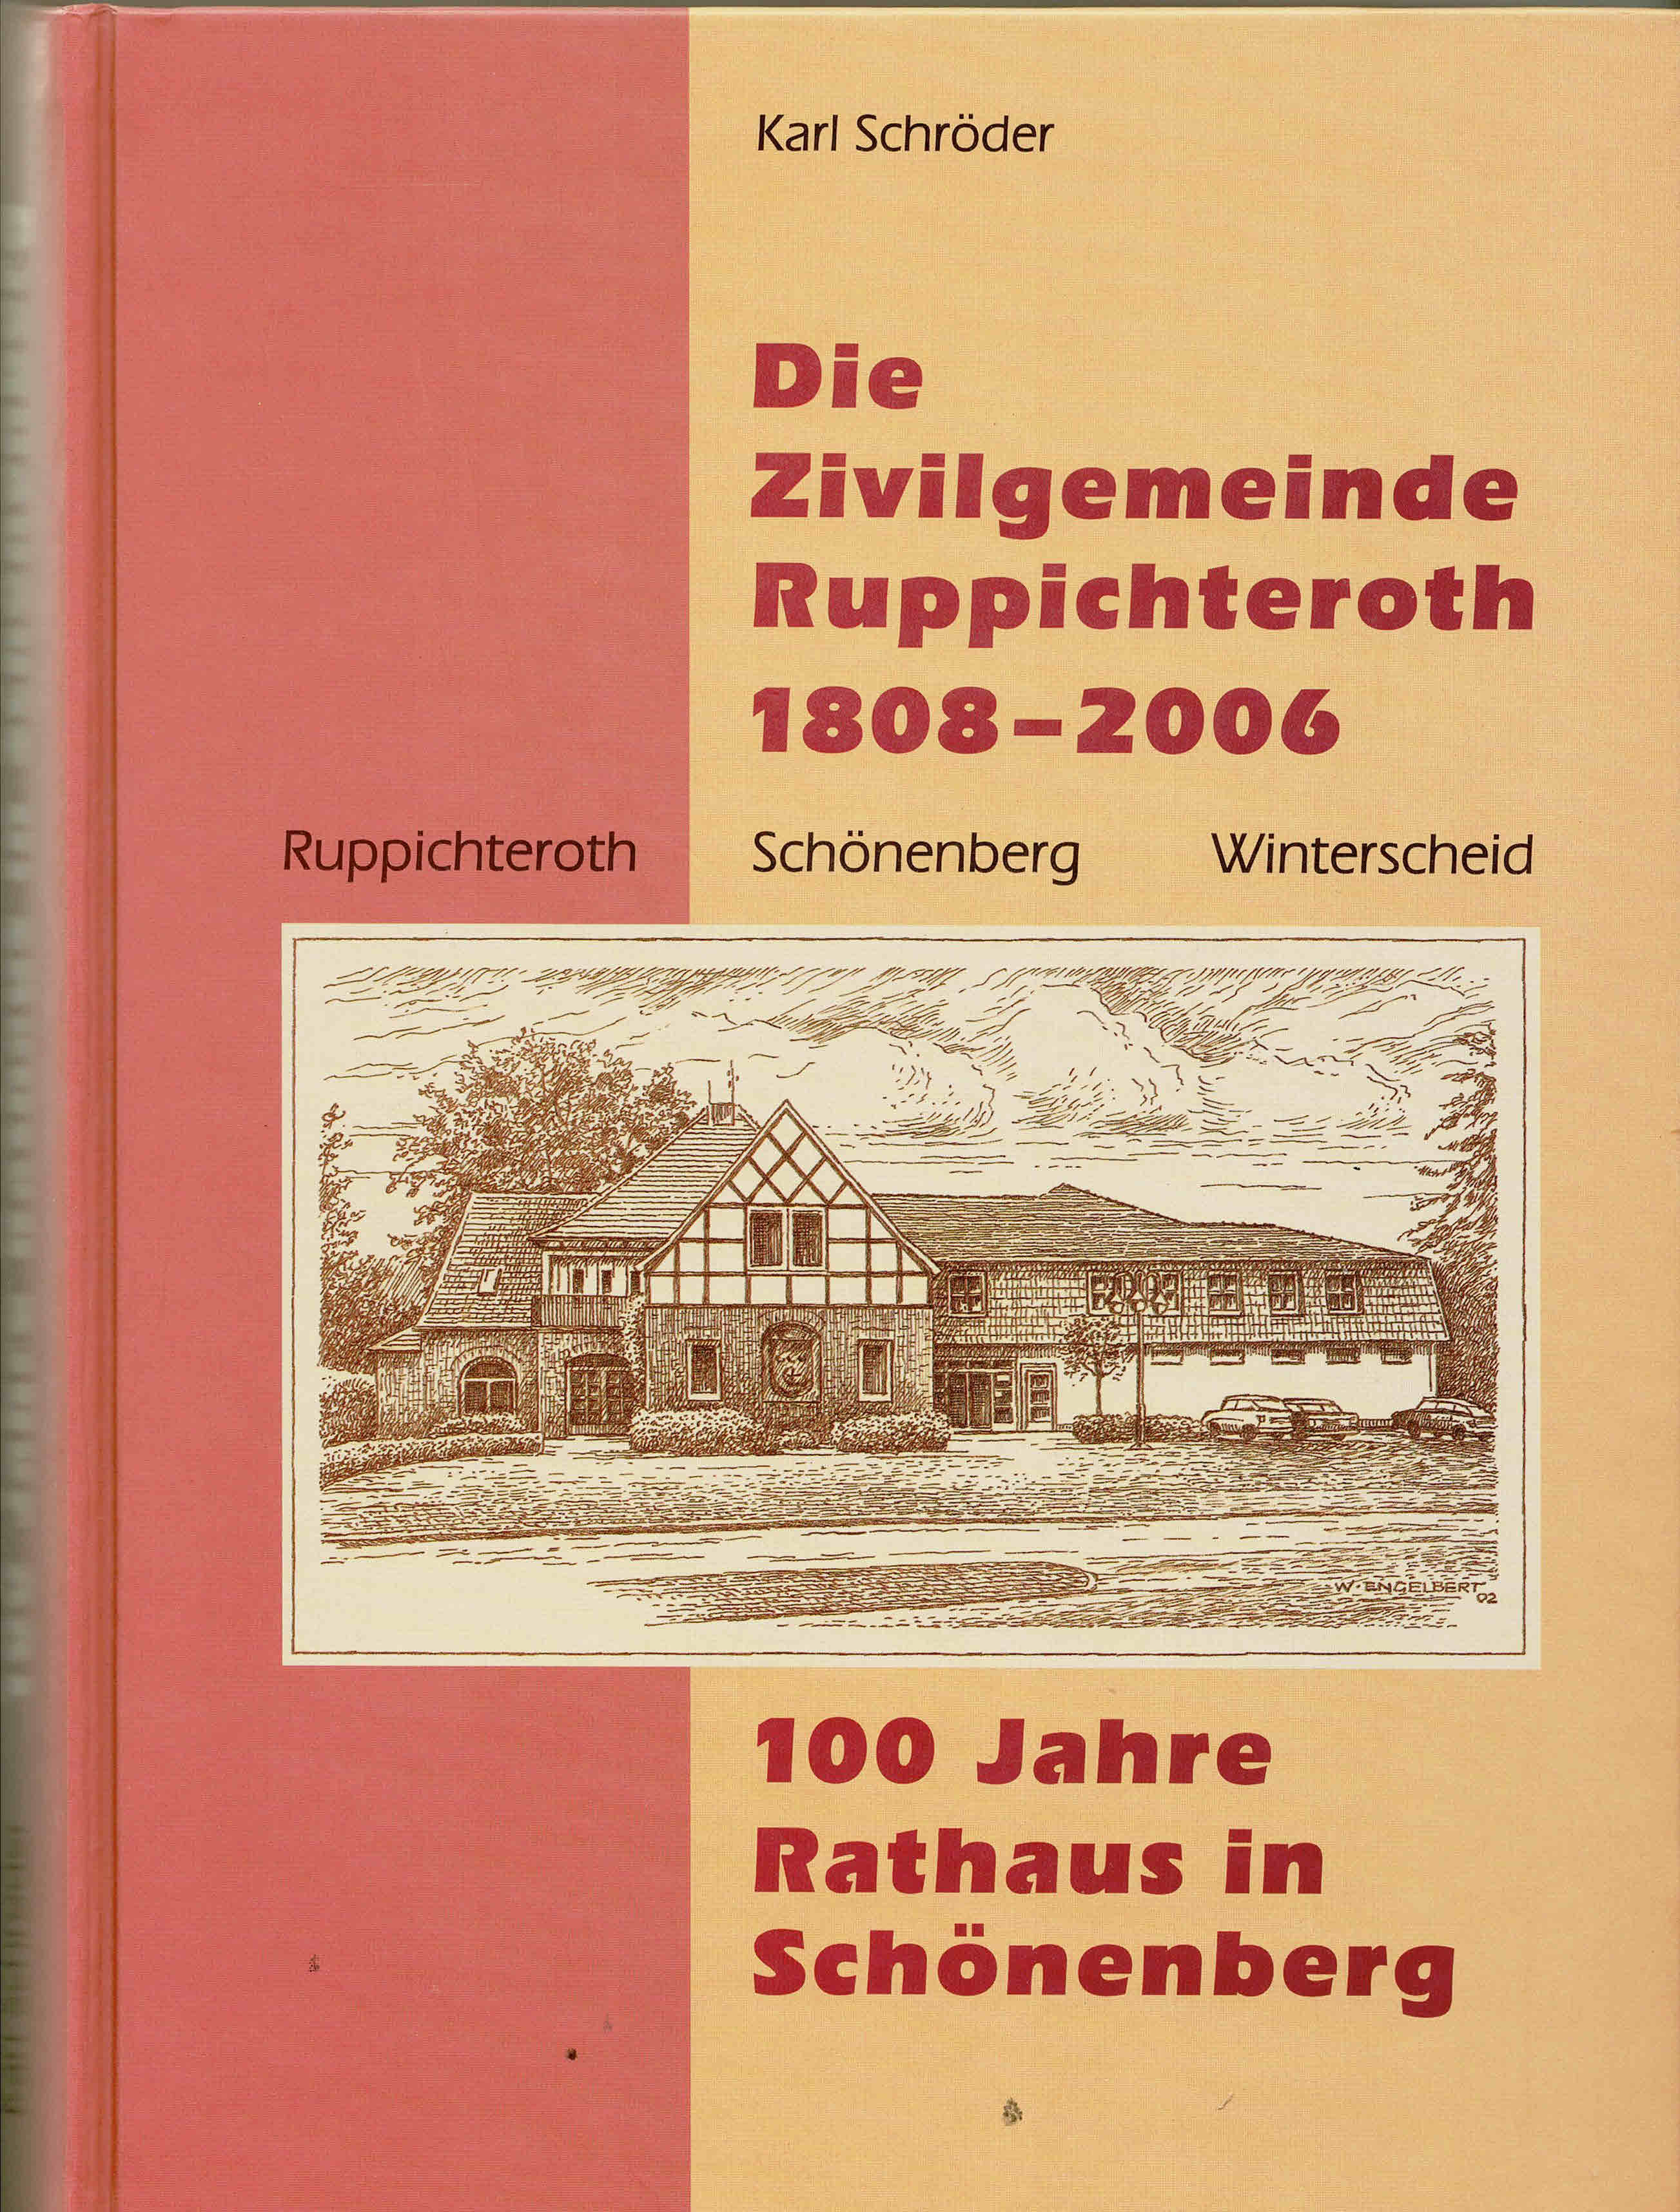 Die Zivilgemeinde Ruppichteroth 1808 - 2006. Ruppichteroth, Schönenberg, Winterscheid. 100 Jahre Rathaus in Schönenberg (2006) - Schröder, Karl